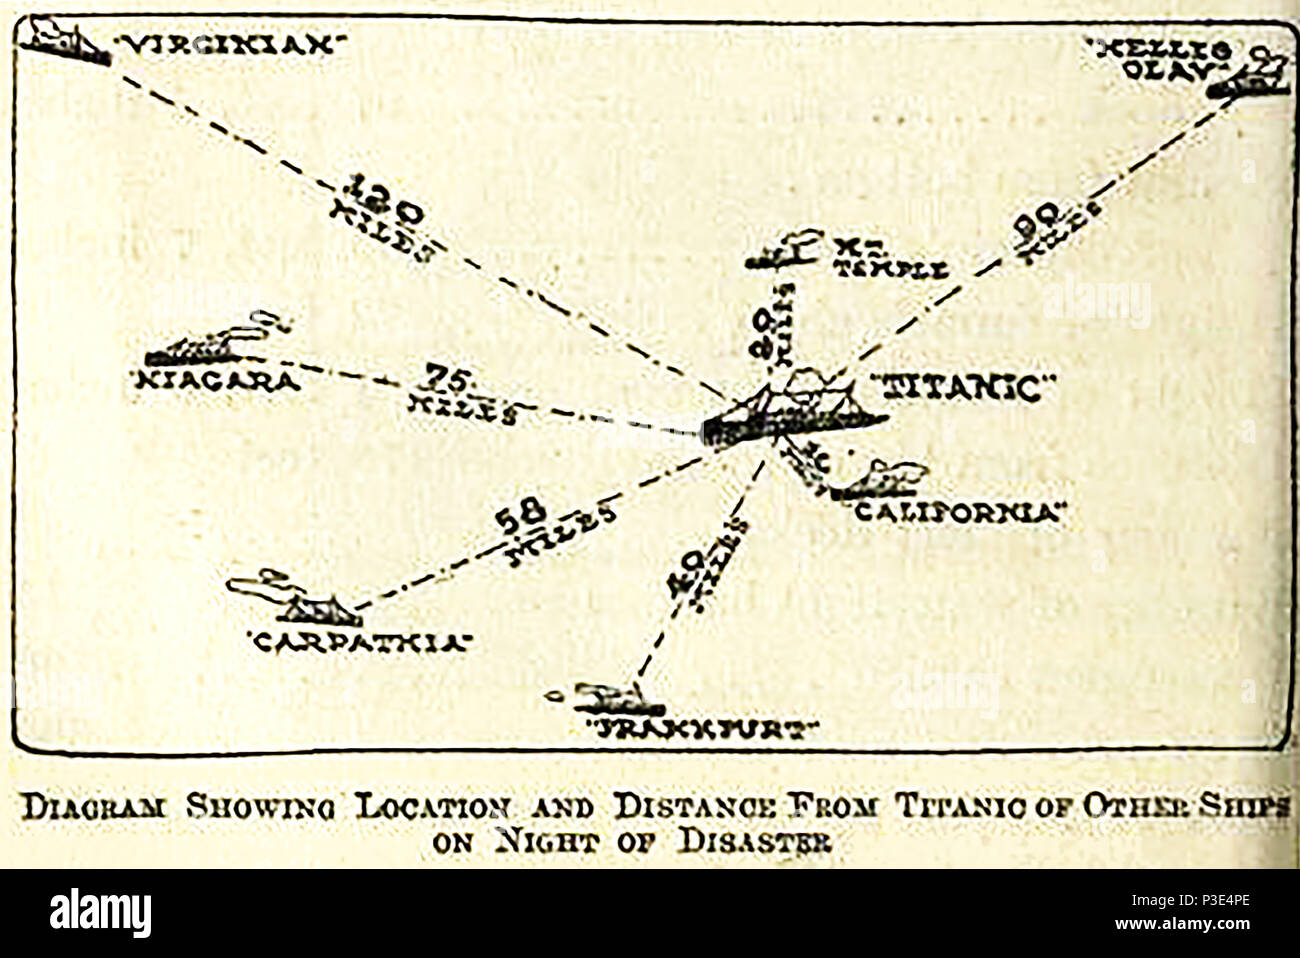 1912 Un croquis/diagramme de la navires à proximité du Titanic lorsqu'il sombra Banque D'Images